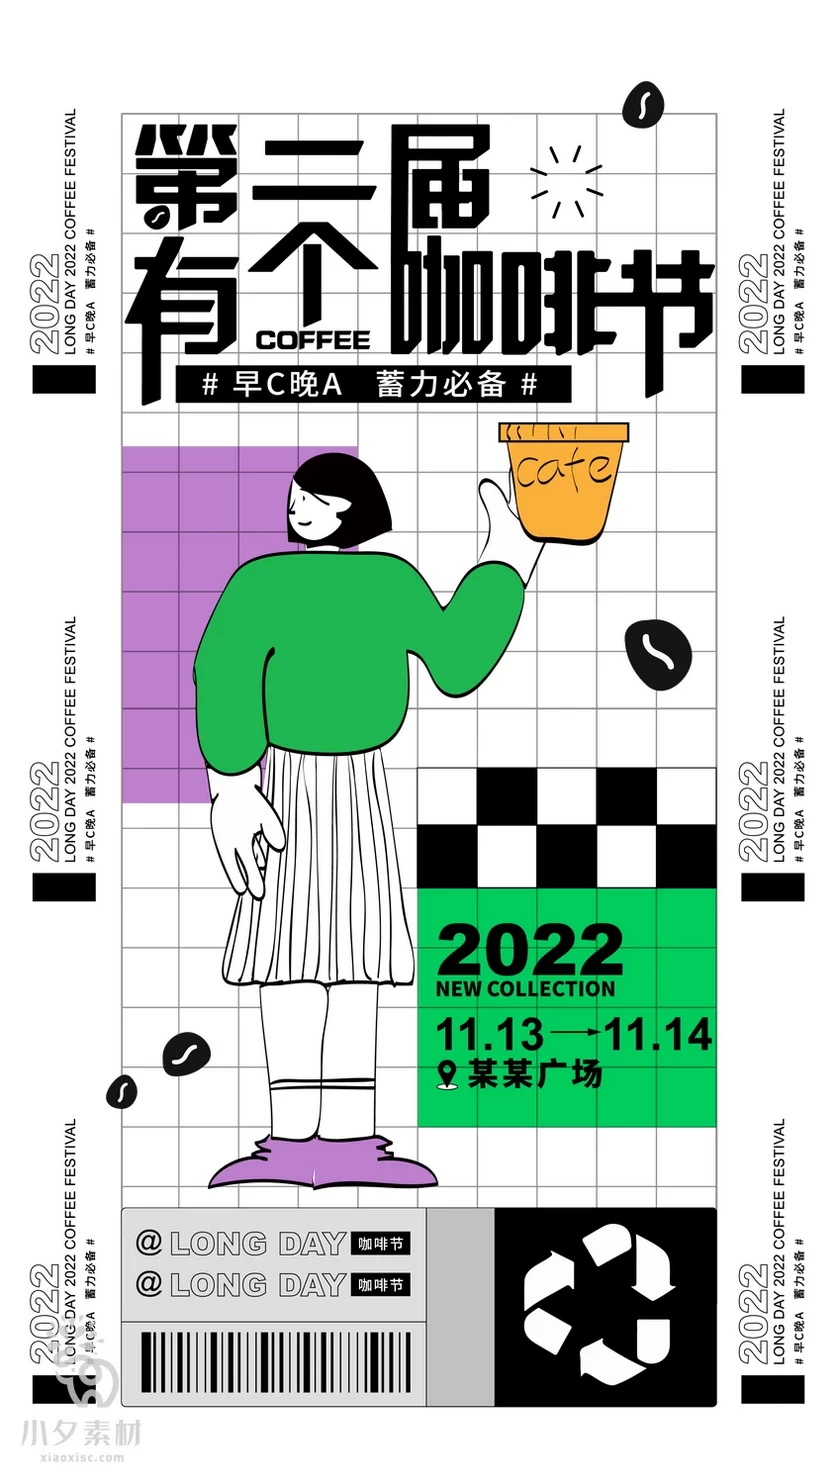 潮流创意咖啡饮品艺术节活动宣传促销海报展板模板AI矢量设计素材【002】